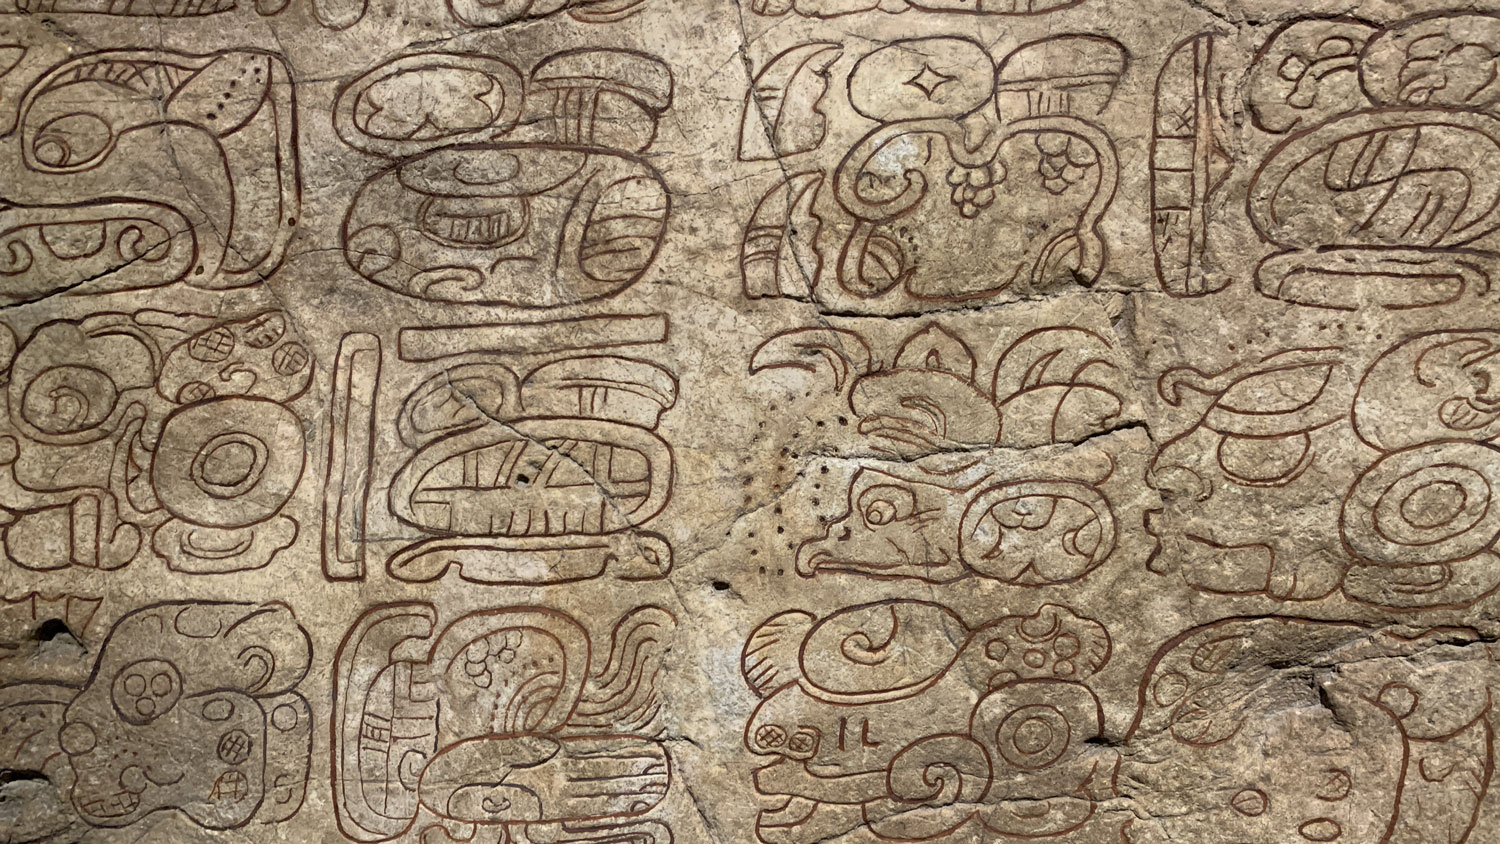 Maya hieroglyphs on a stela.